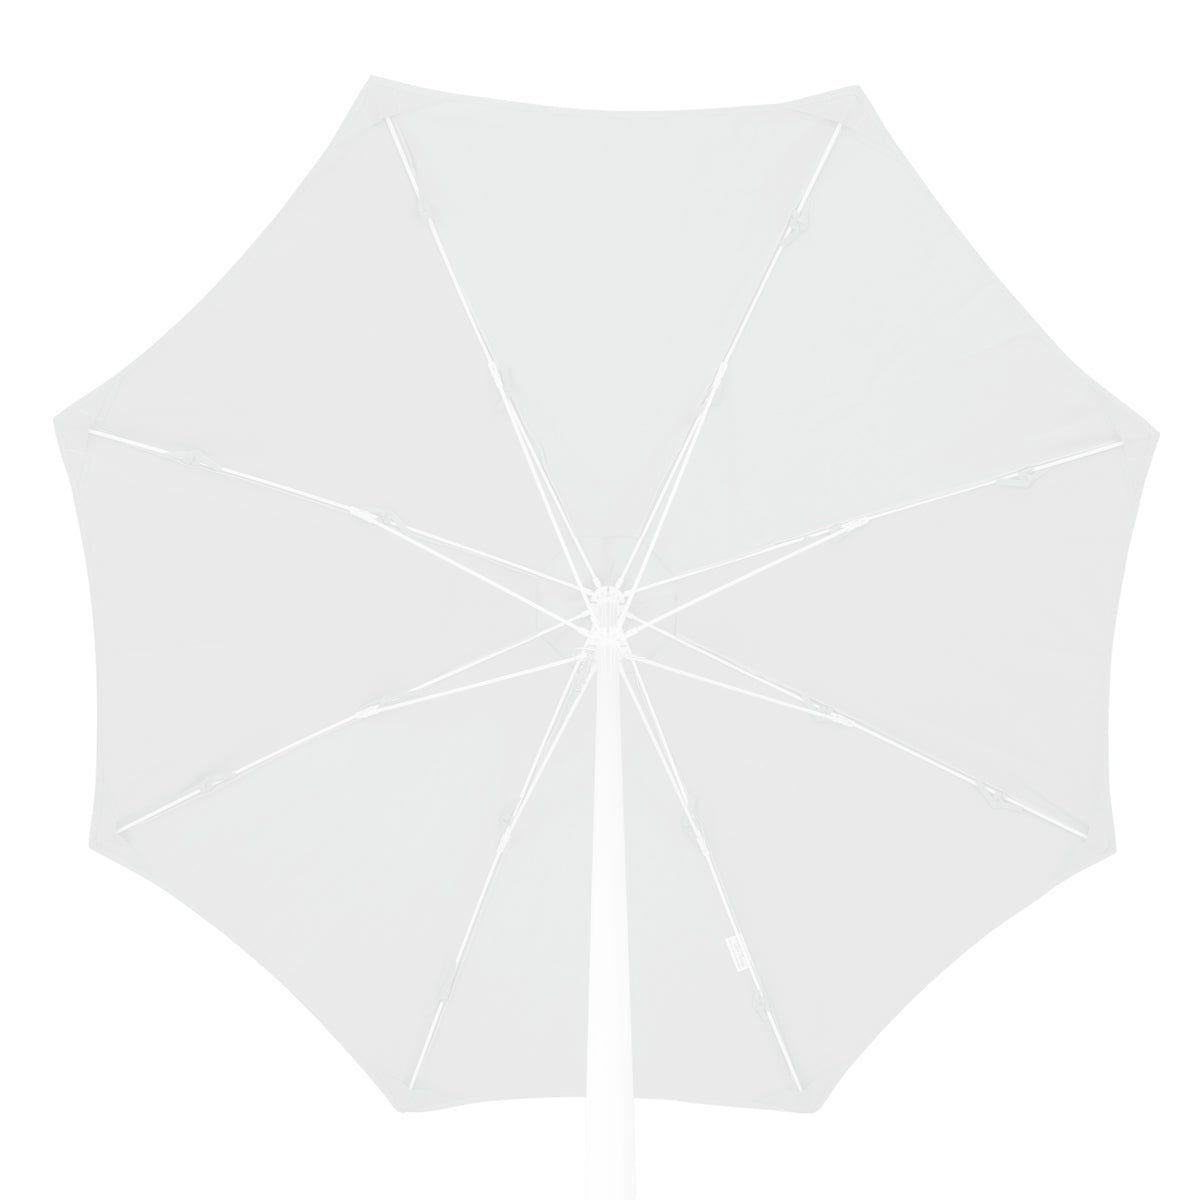 Kai Luxury Umbrella